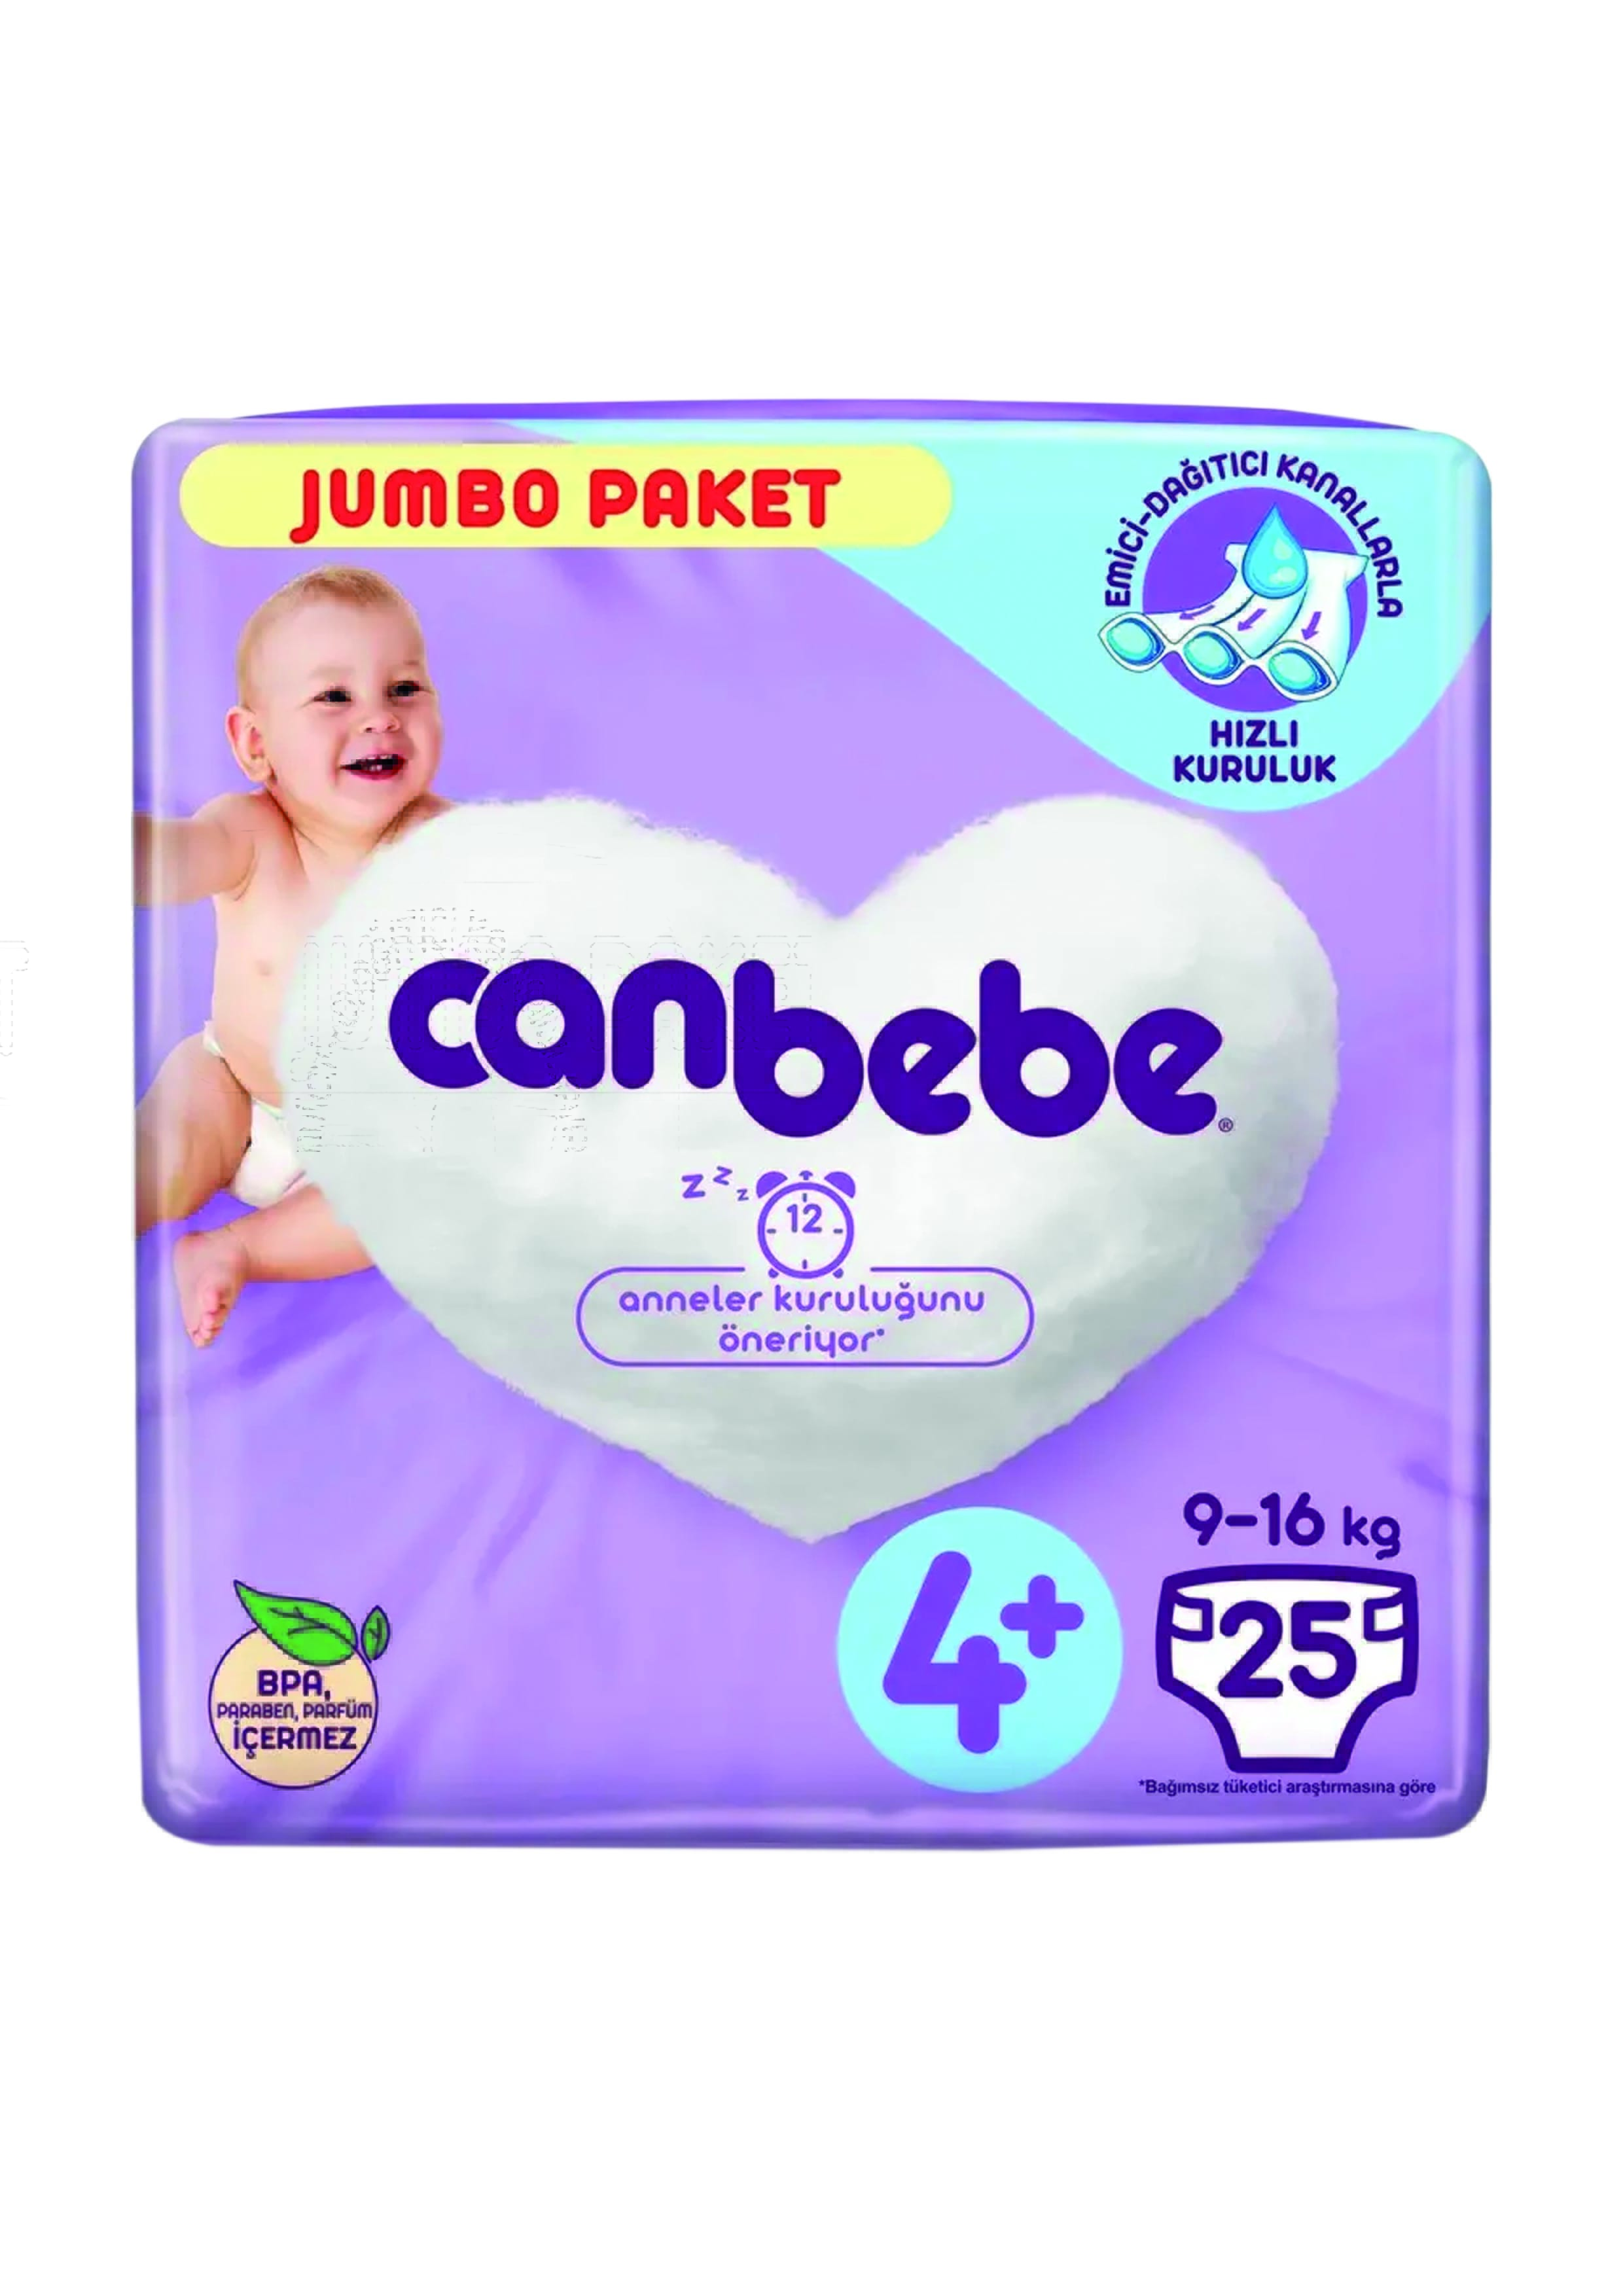 Canbebe Jumbo Paket No 4+ 25 Adet